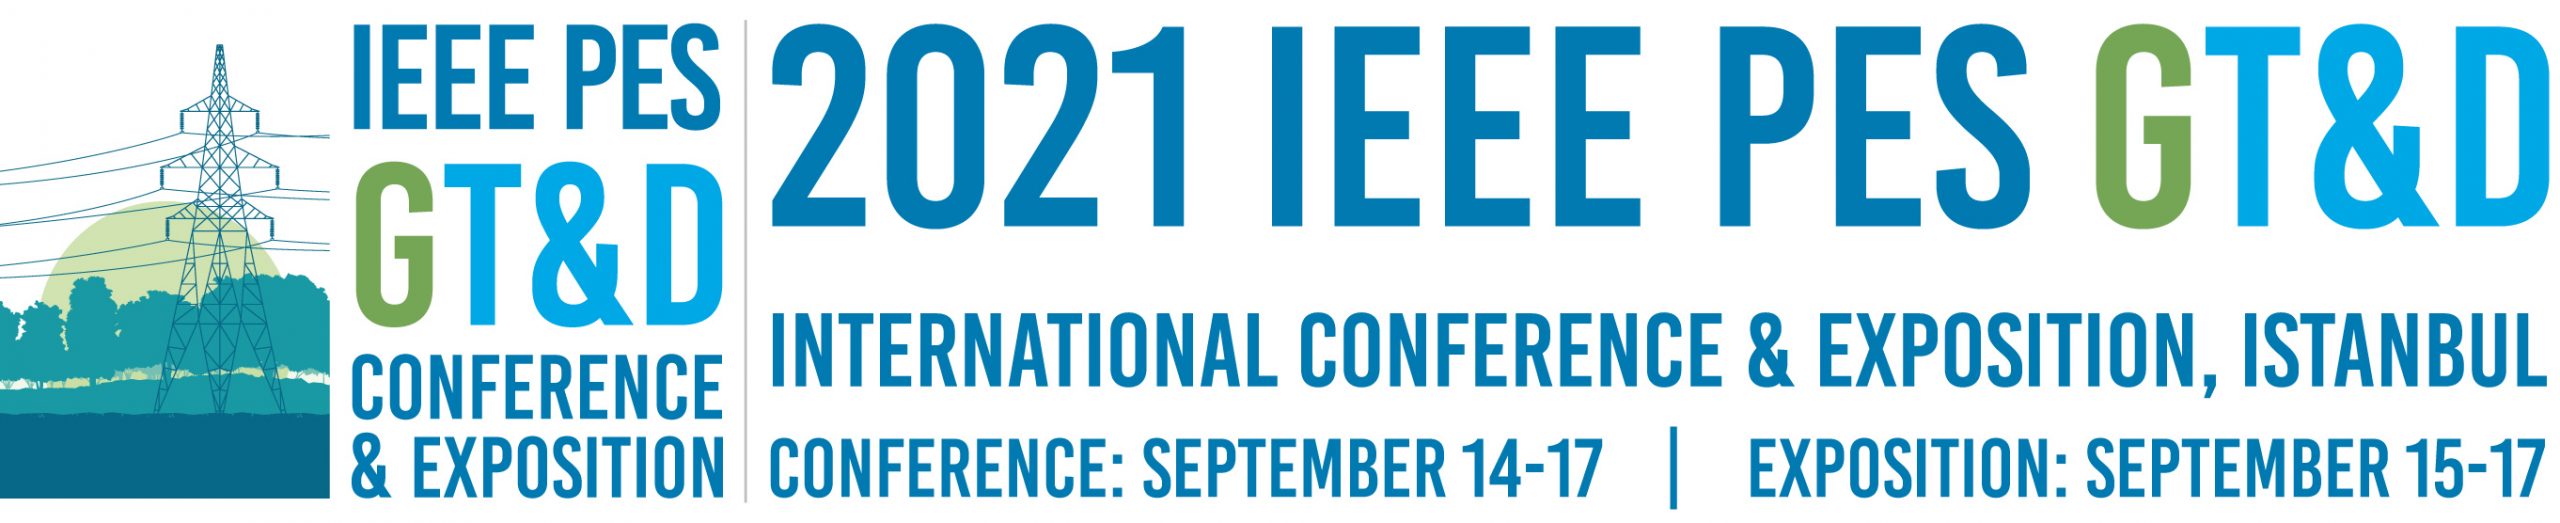 IEEE PES GT&D ULUSLARARASI KONFERANS VE FUARI Eylül 2021'de İstanbul'da yapılacak